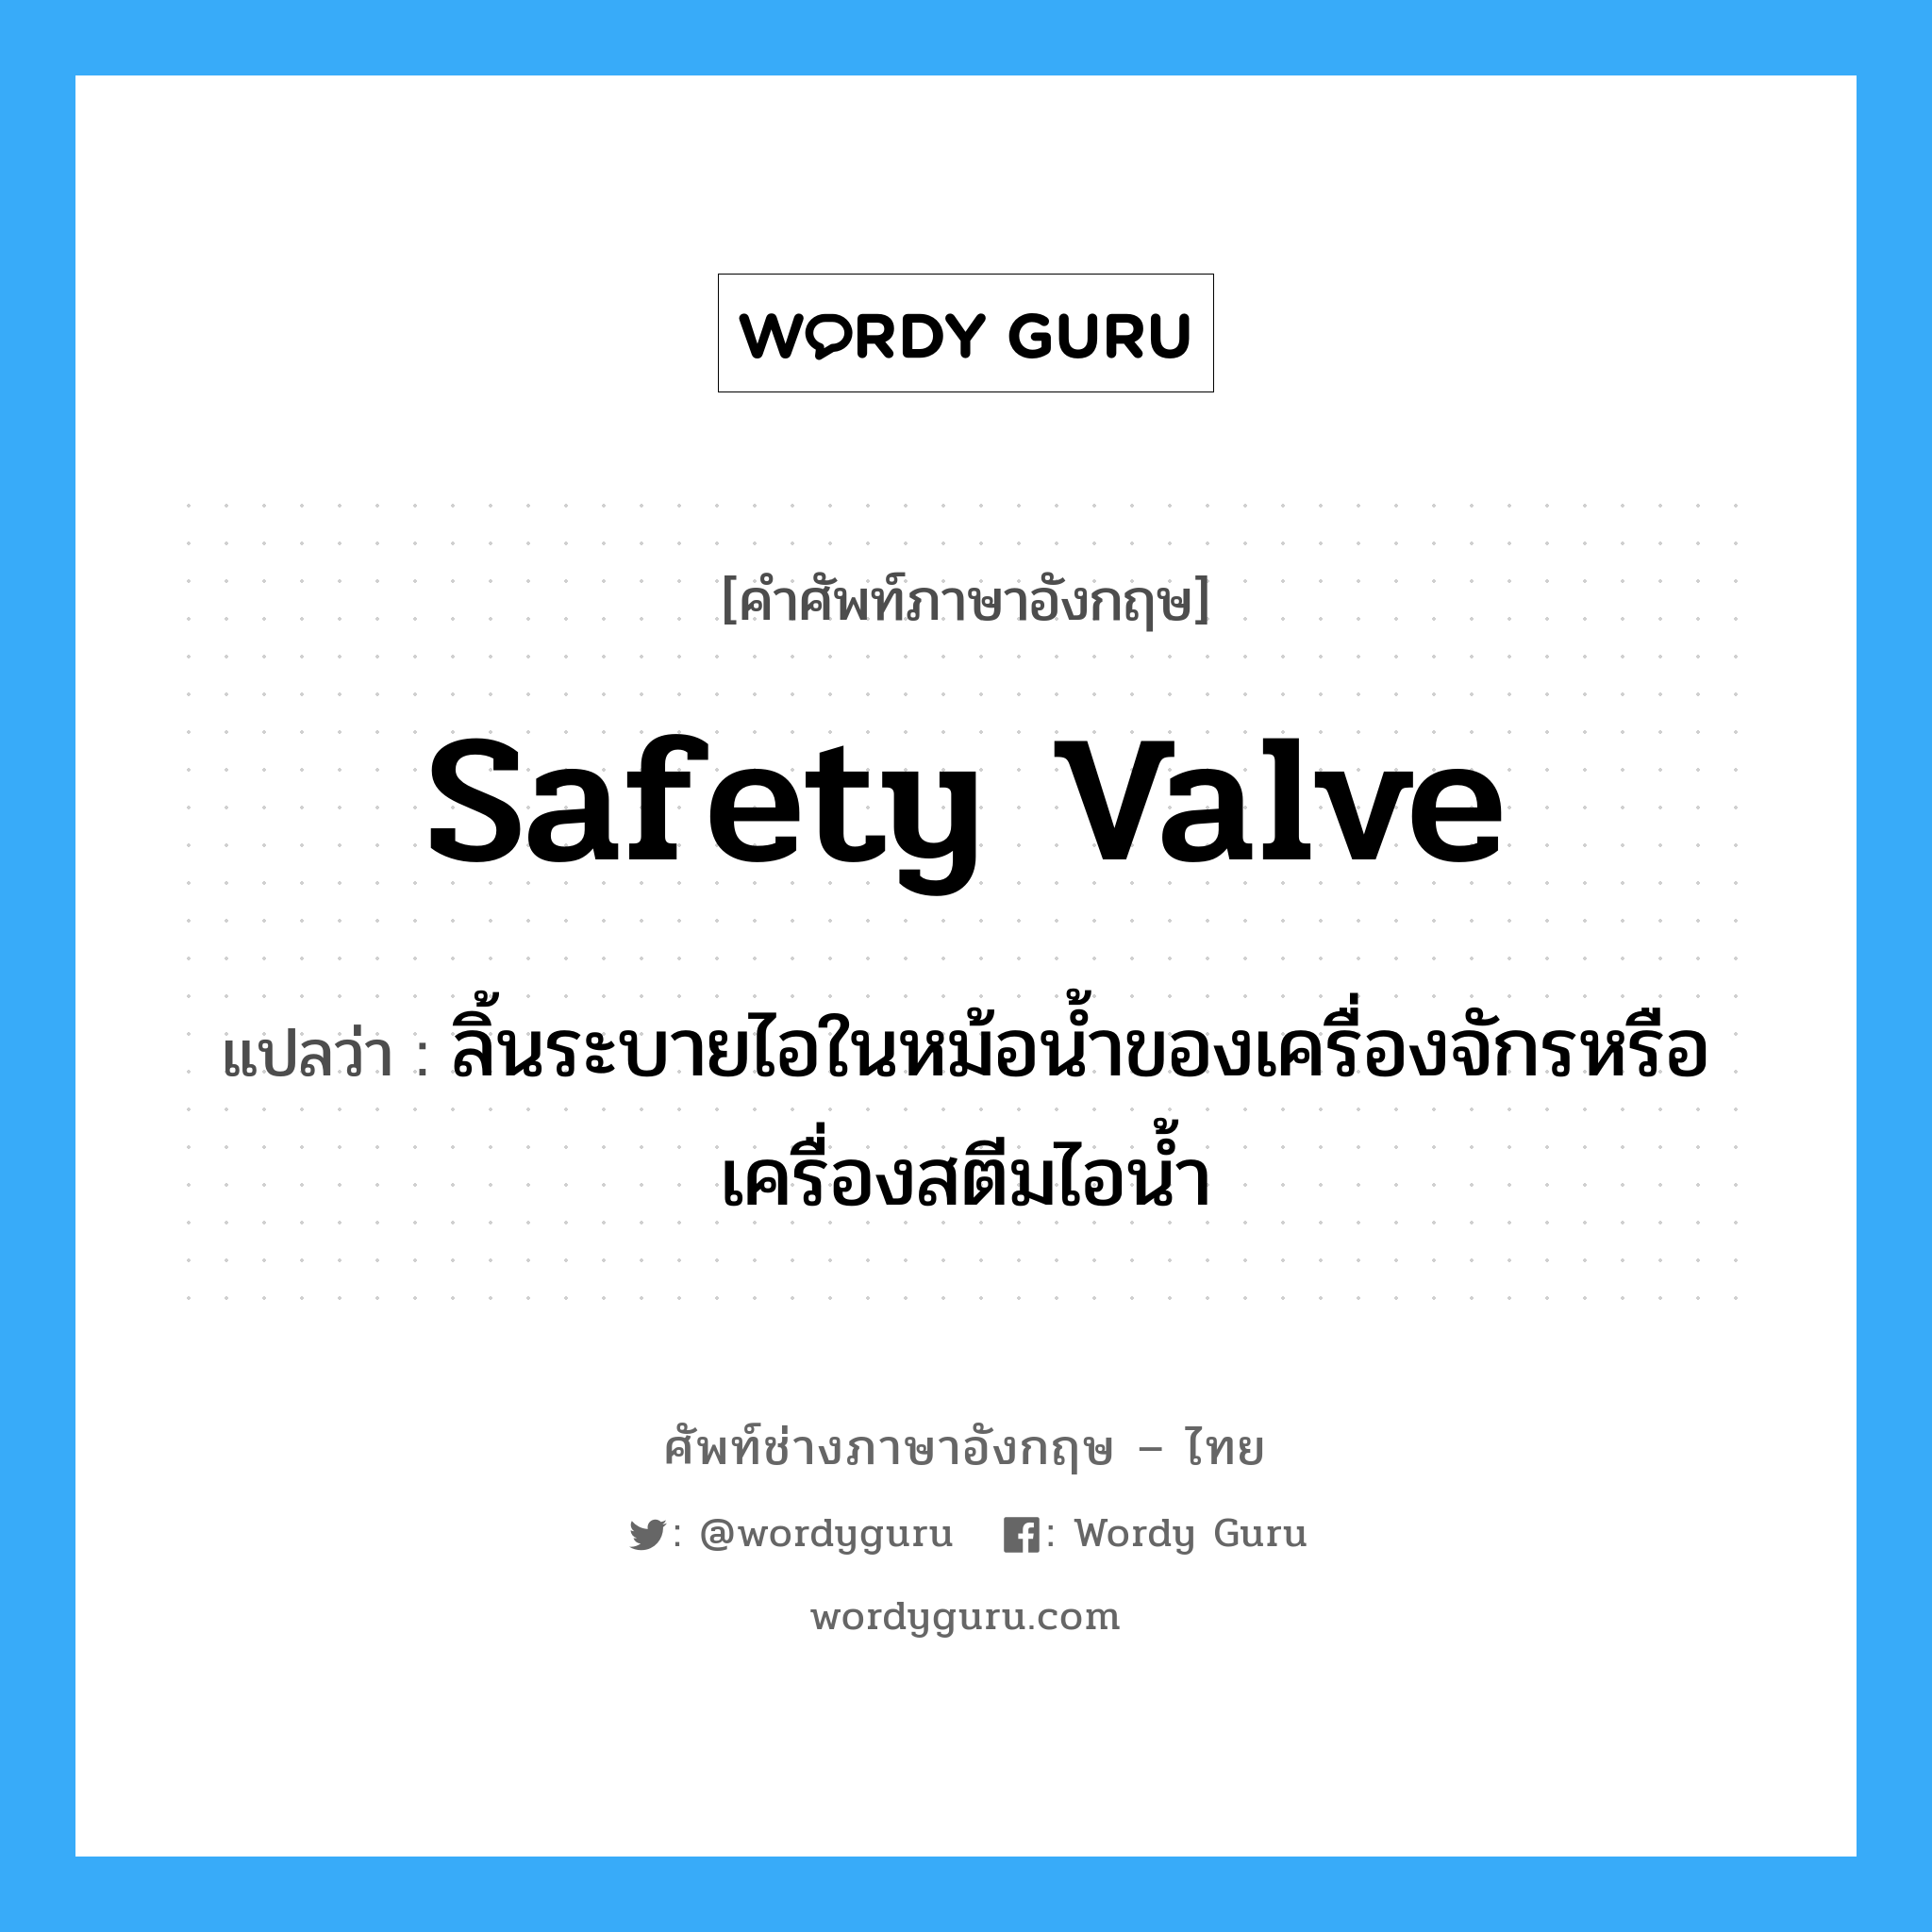 safety valve แปลว่า?, คำศัพท์ช่างภาษาอังกฤษ - ไทย safety valve คำศัพท์ภาษาอังกฤษ safety valve แปลว่า ลิ้นระบายไอในหม้อน้ำของเครื่องจักรหรือเครื่องสตีมไอน้ำ